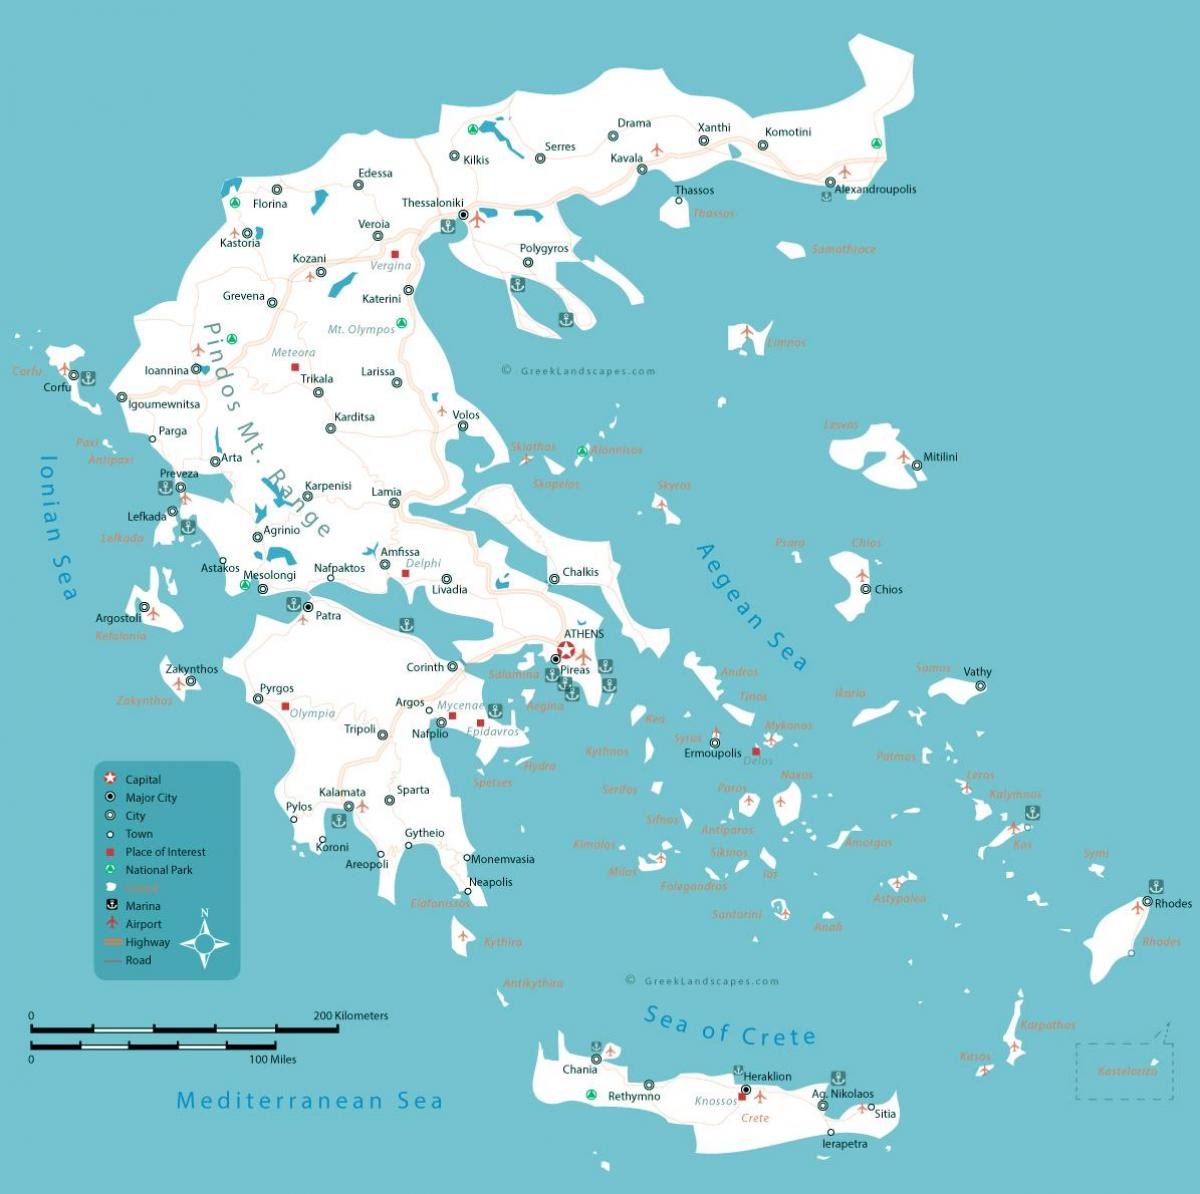 Karte von Griechenland mit den wichtigsten Städten